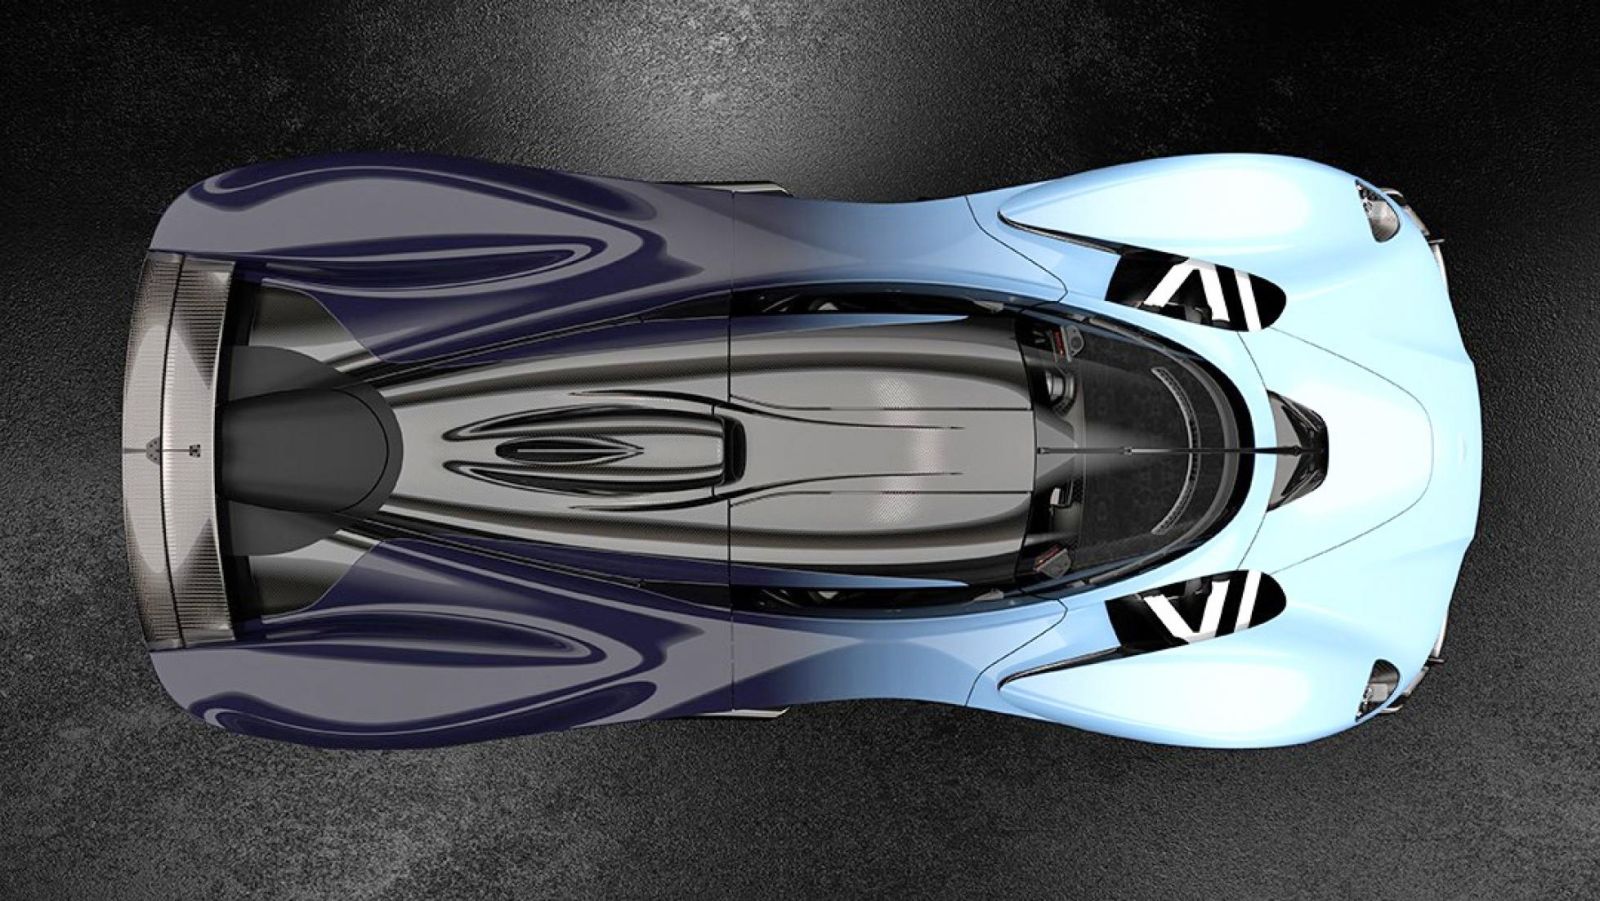 Aston Martin Valkyrie Track Pack dostane nové aero diely